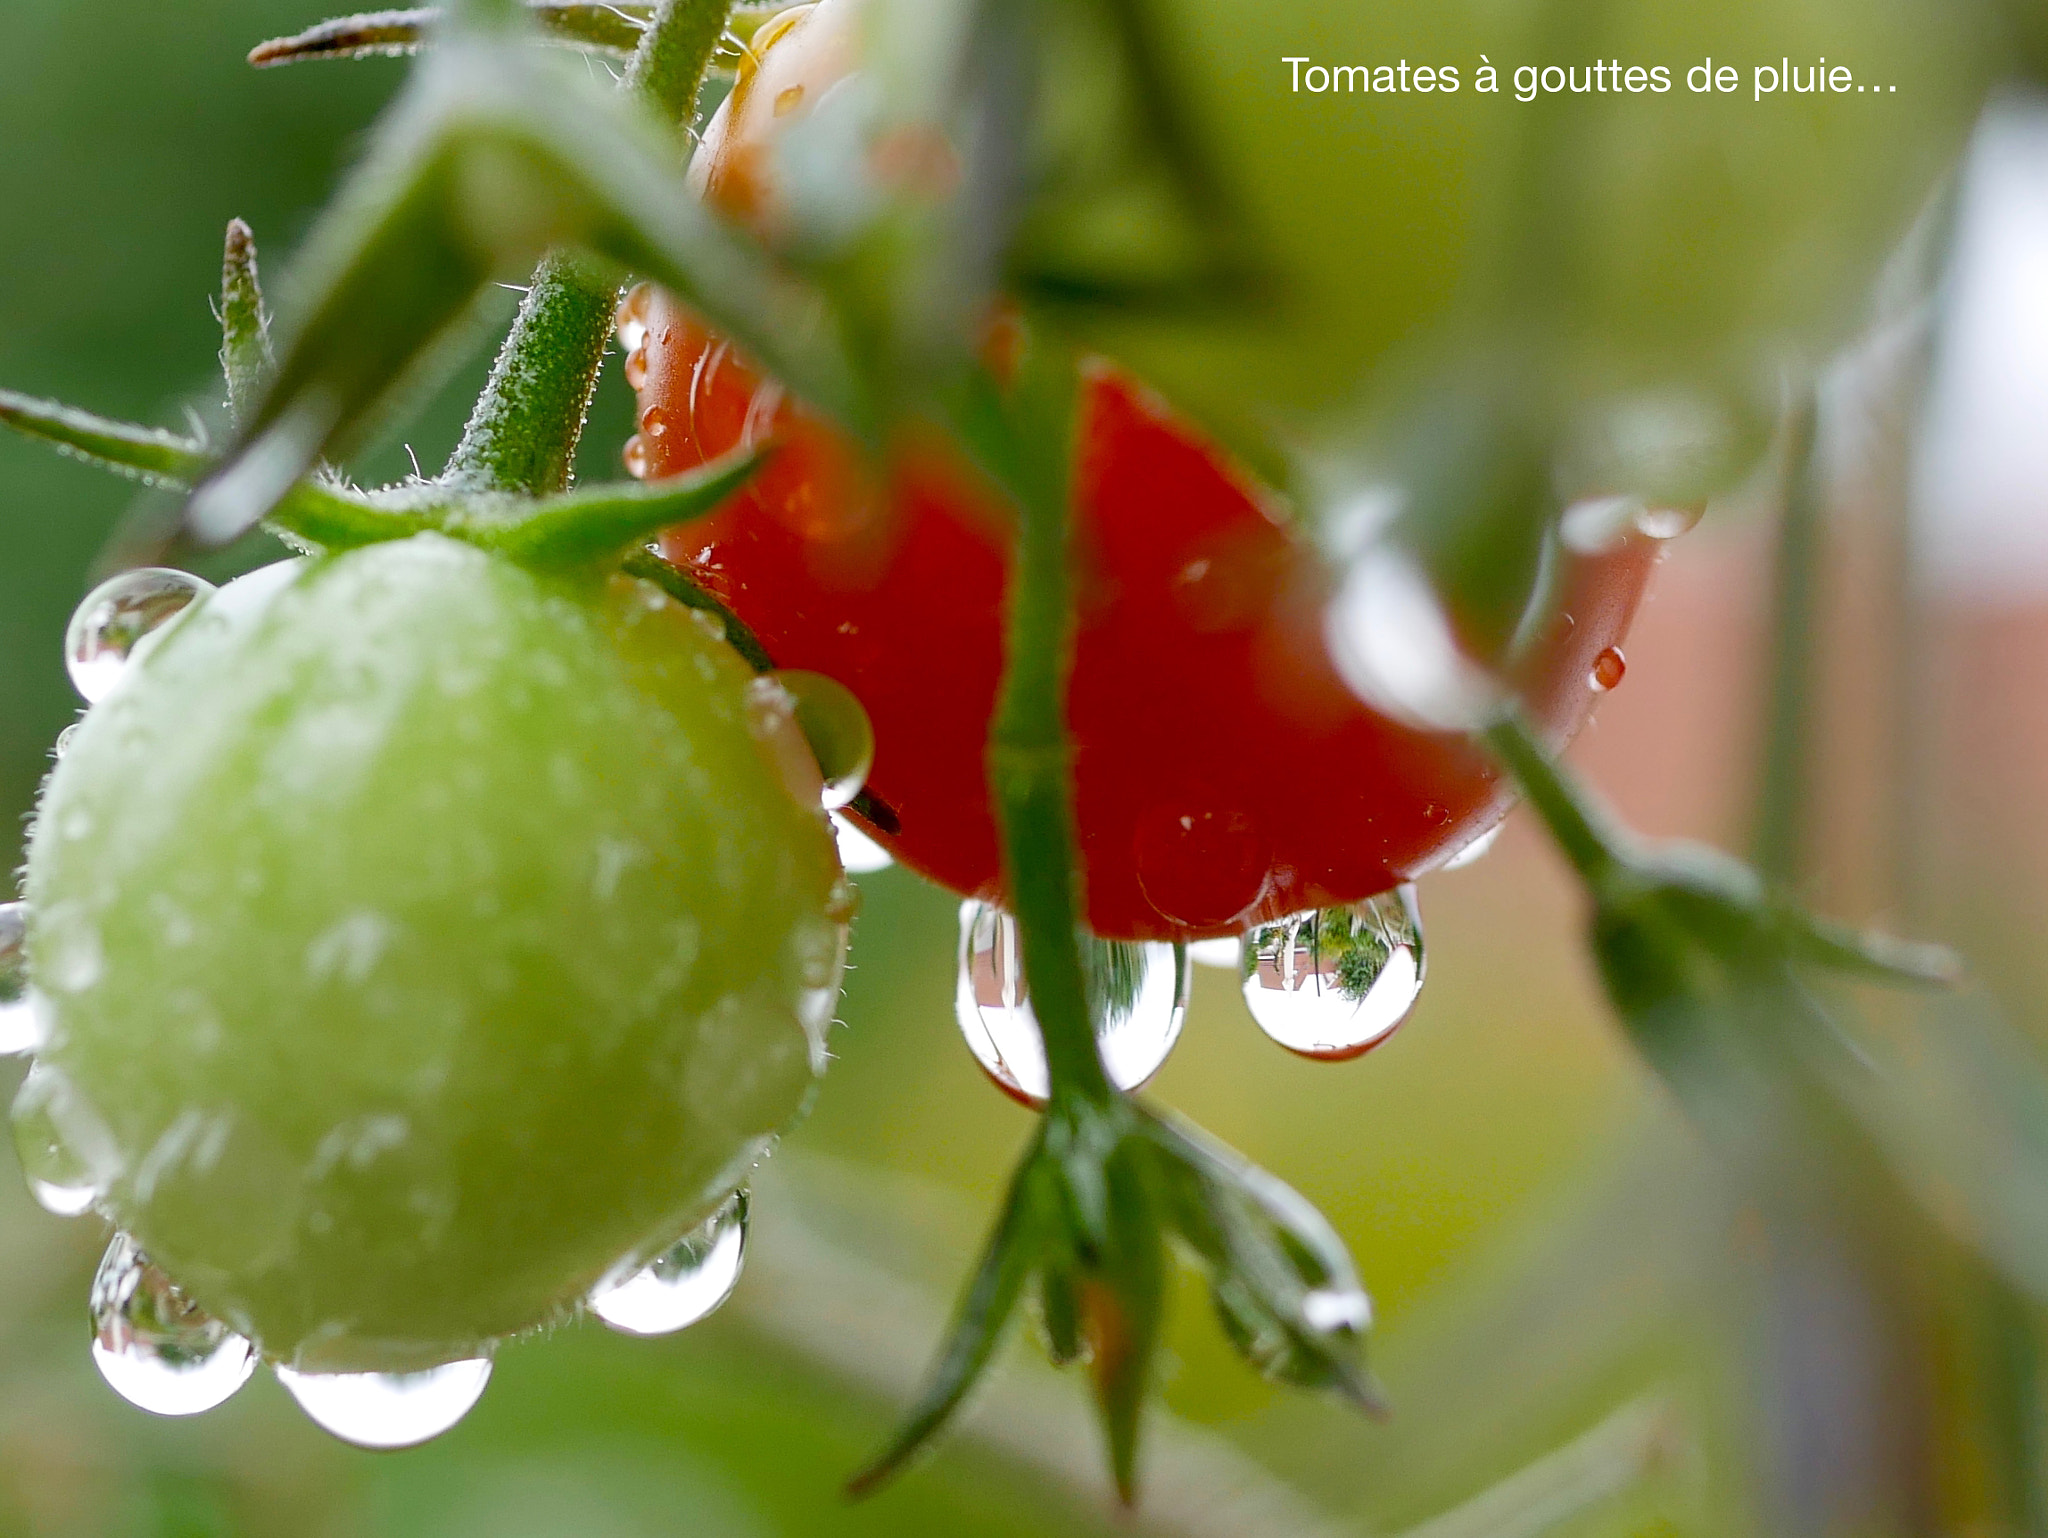 Panasonic DMC-G70 sample photo. Tomates à gouttes de pluie... photography